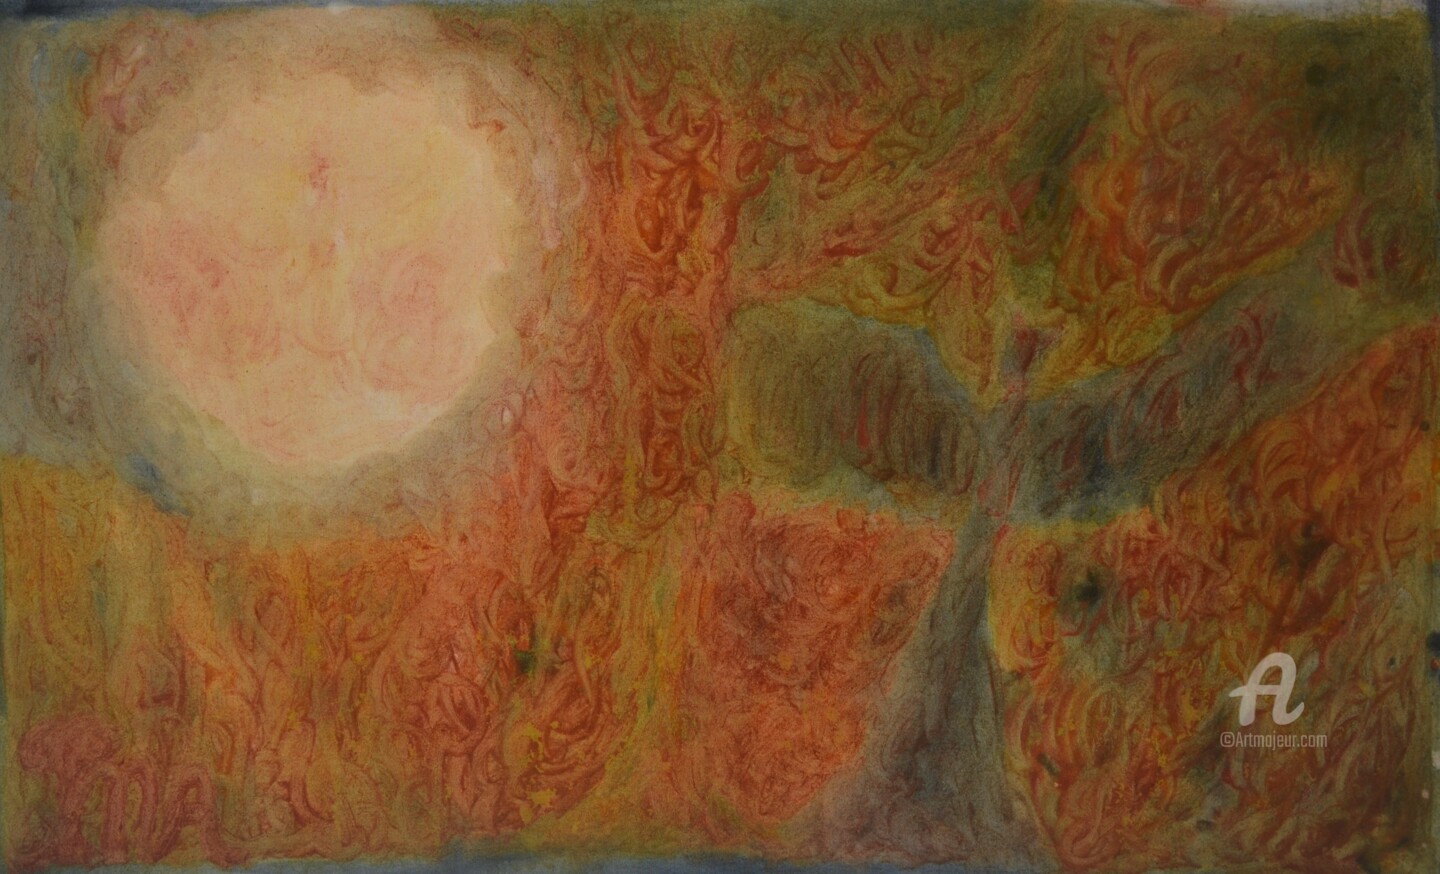 Mariska Ma Veepilaikaliyamma - Full Moon Gate of Fiery Enlightenment